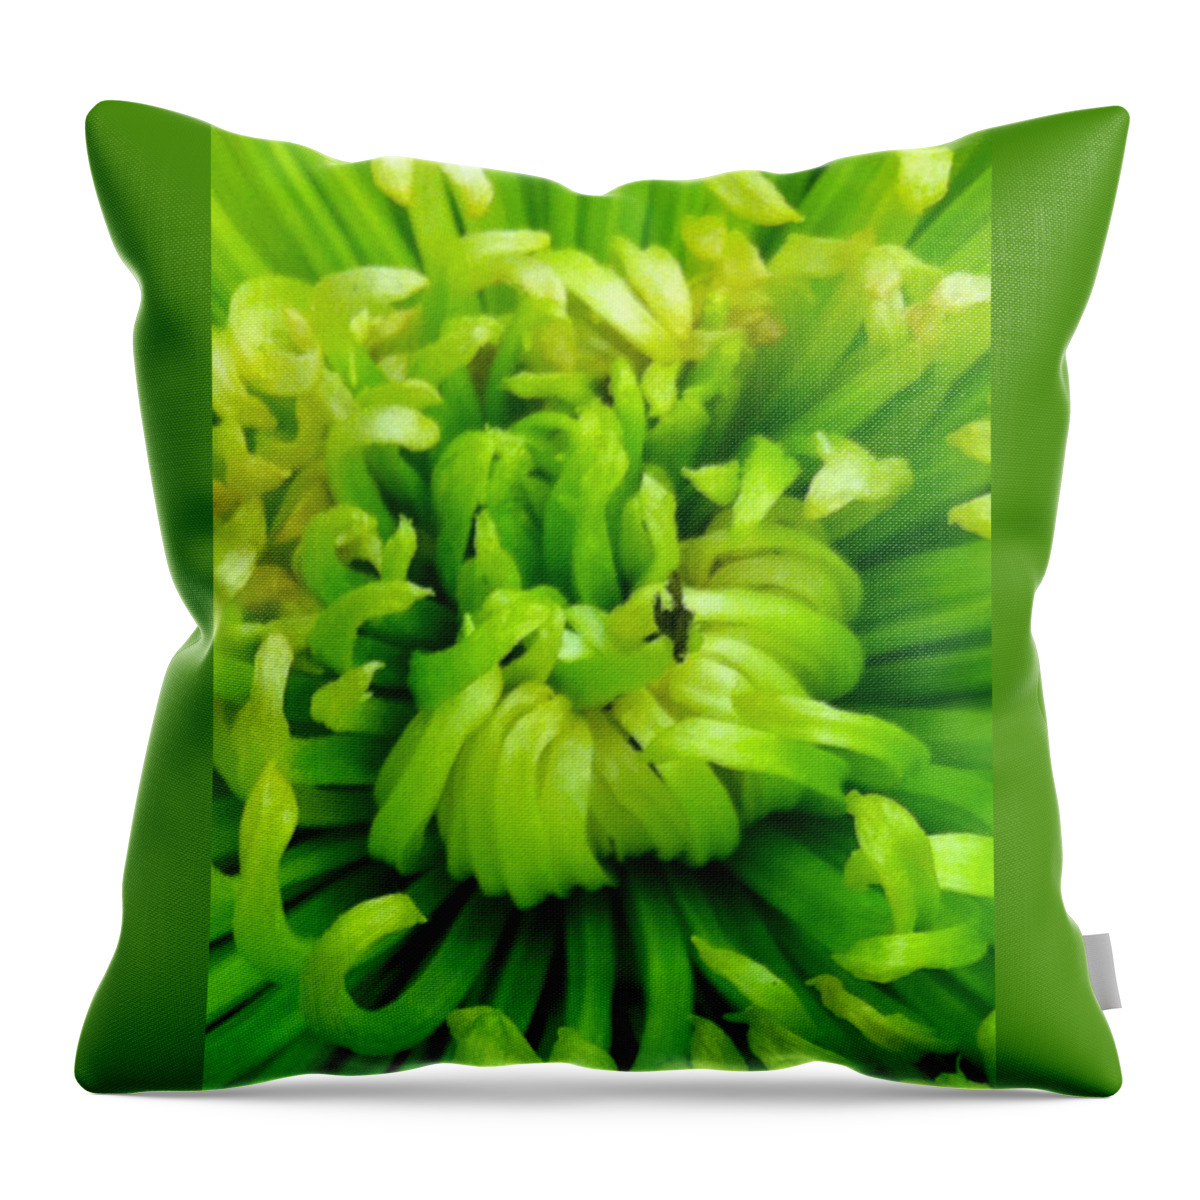 Green Throw Pillow featuring the photograph Green Chrysanthemum by Marian Lonzetta